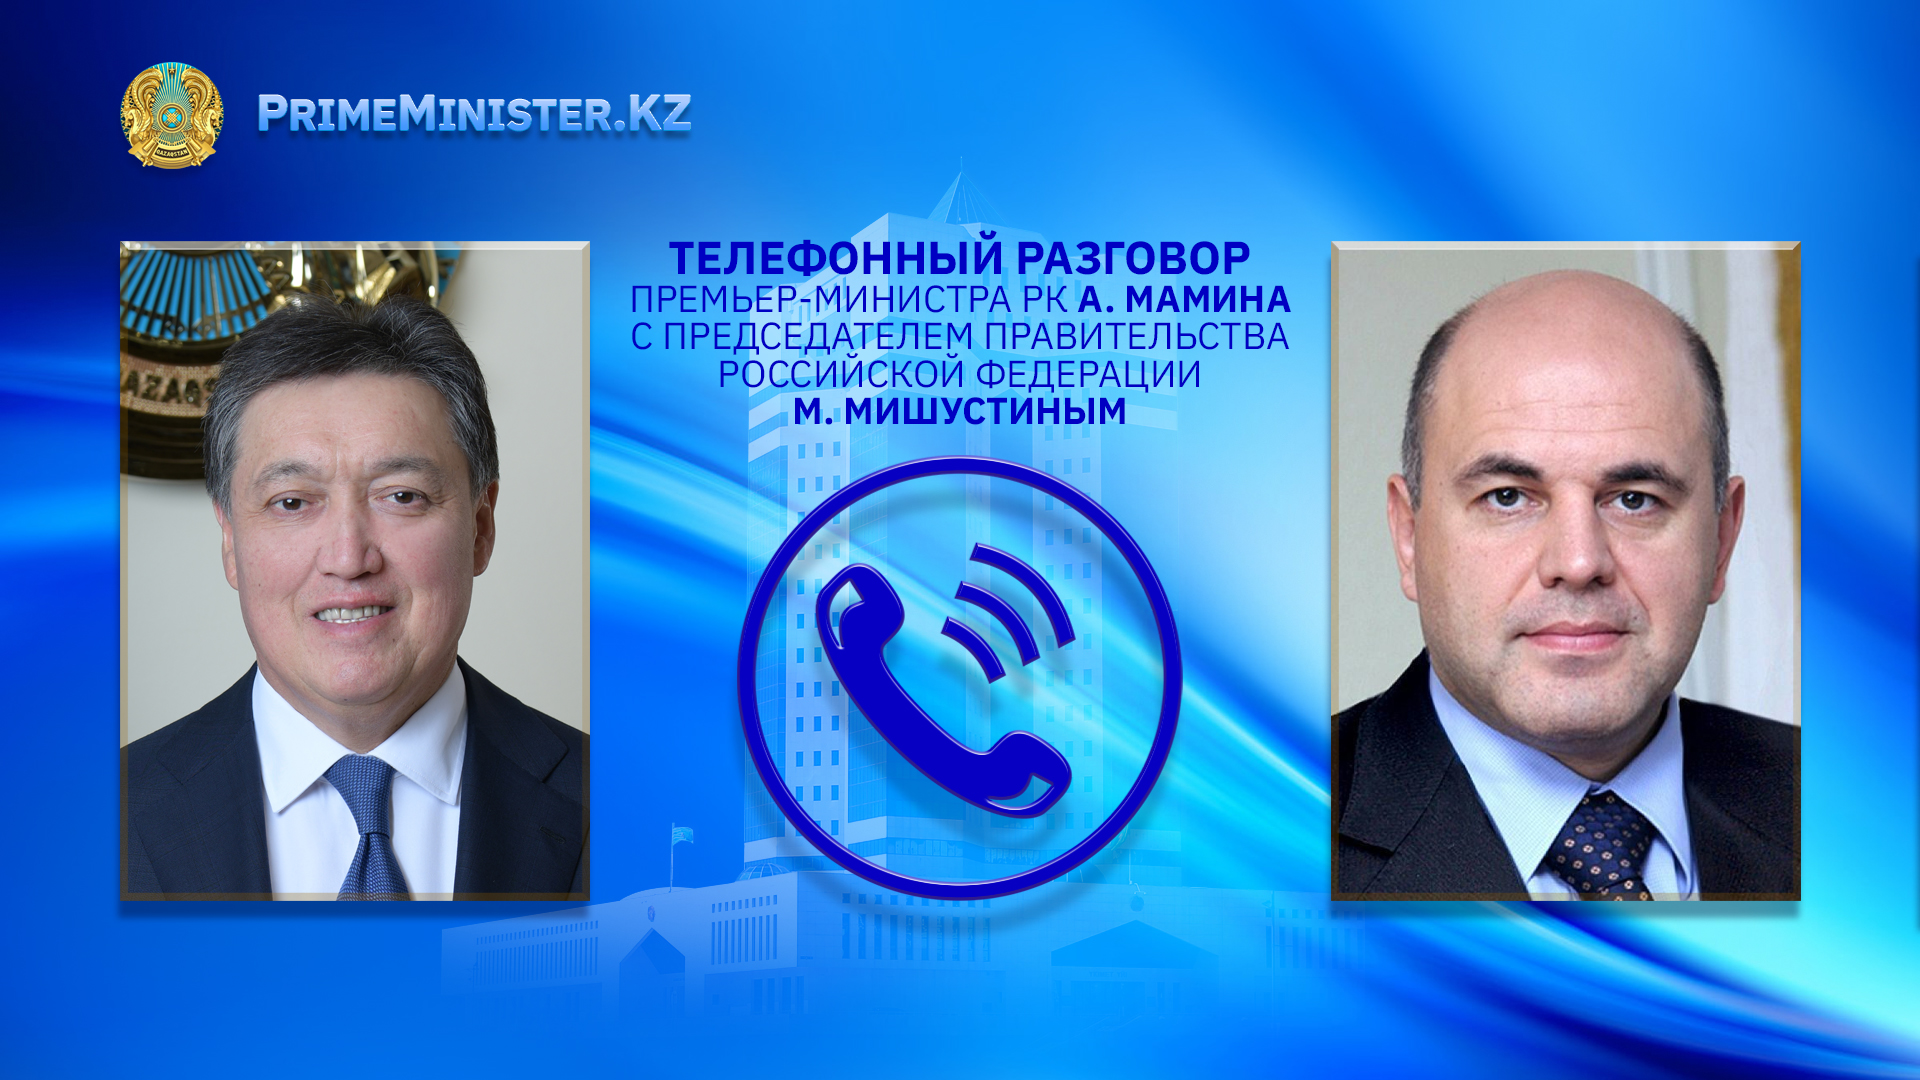 Аскар Мамин и Михаил Мишустин обсудили состояние и перспективы казахстанско-российского сотрудничества